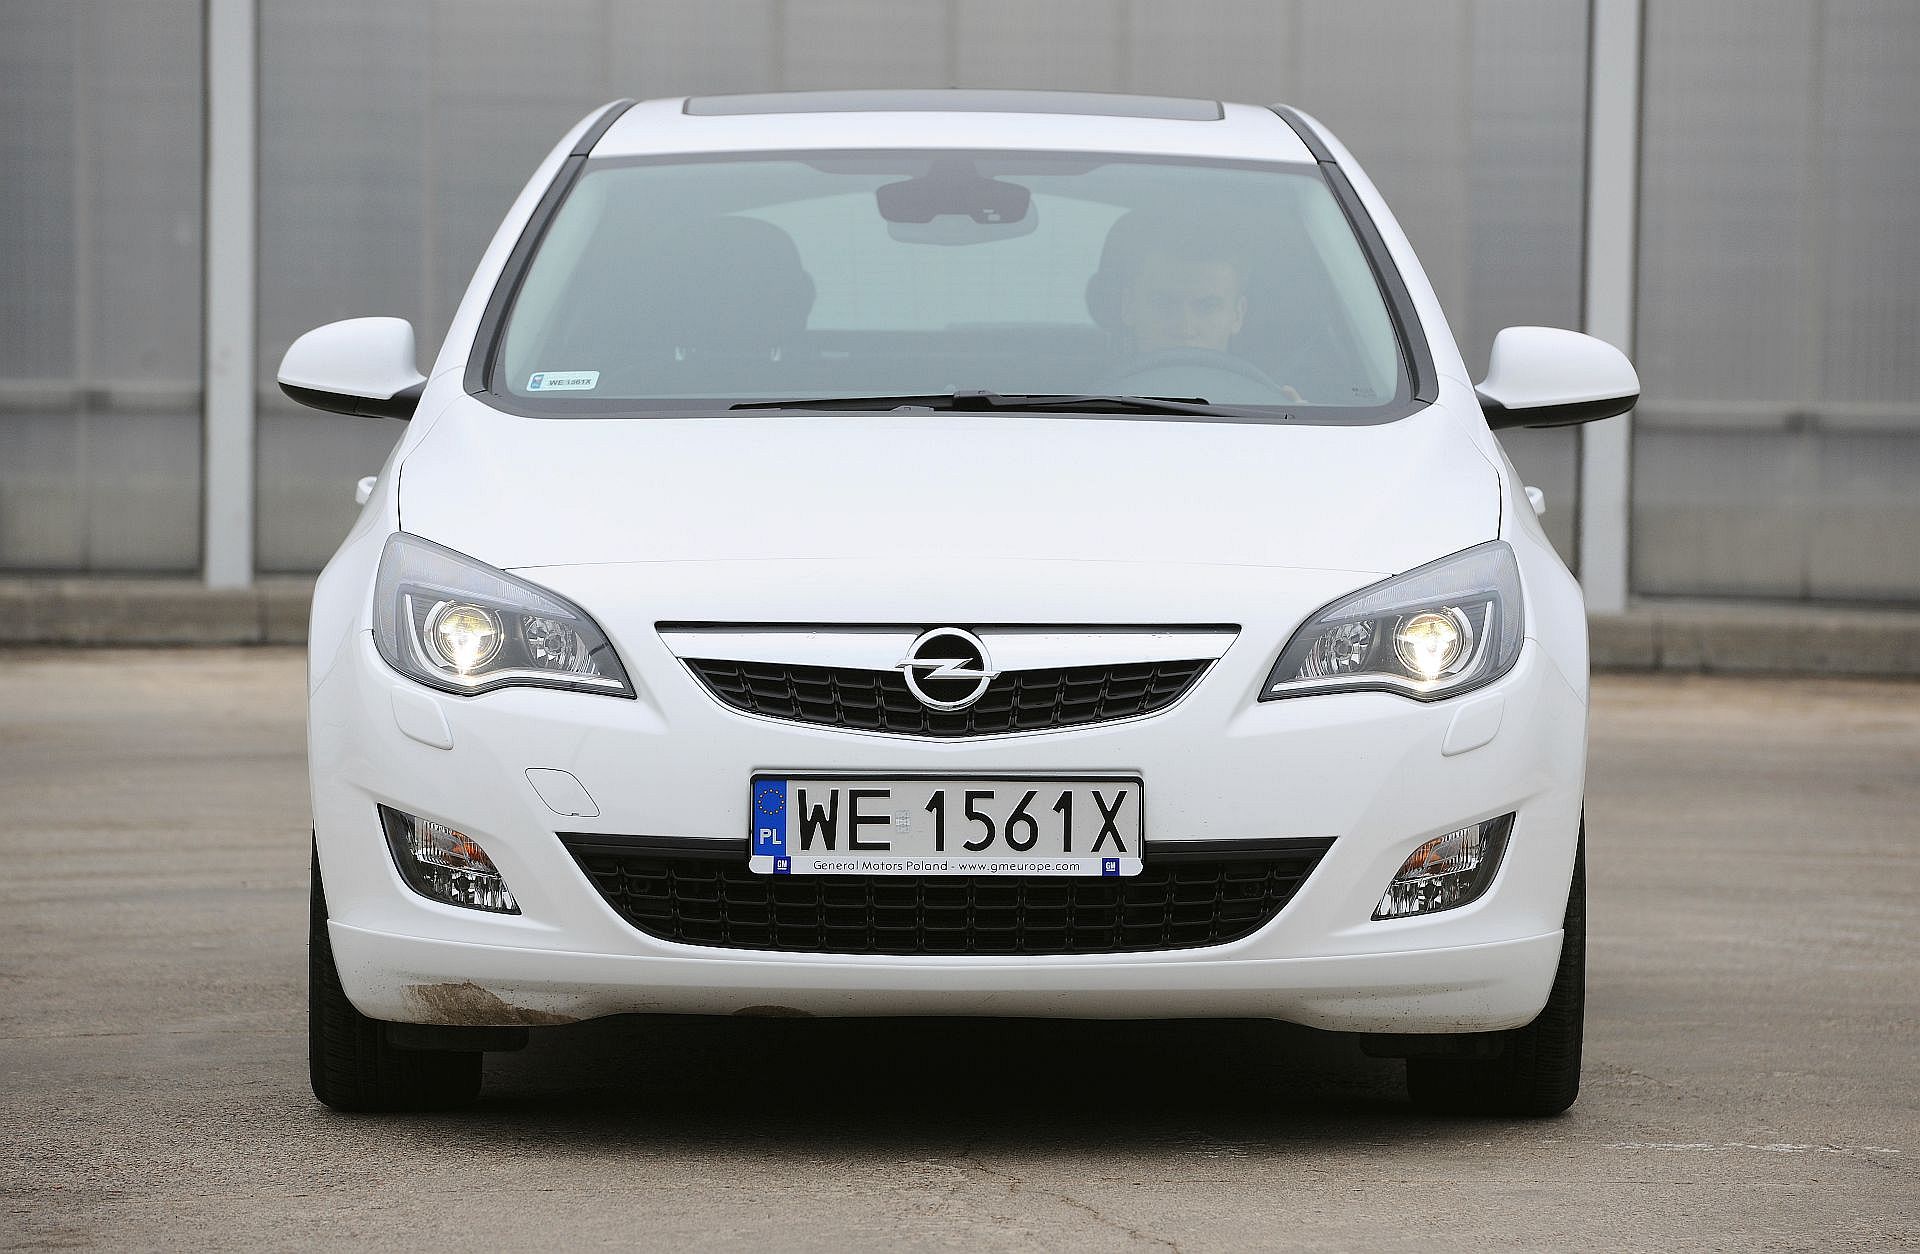 Używany Opel Astra J (2009-2018) – opinie, dane techniczne, usterki